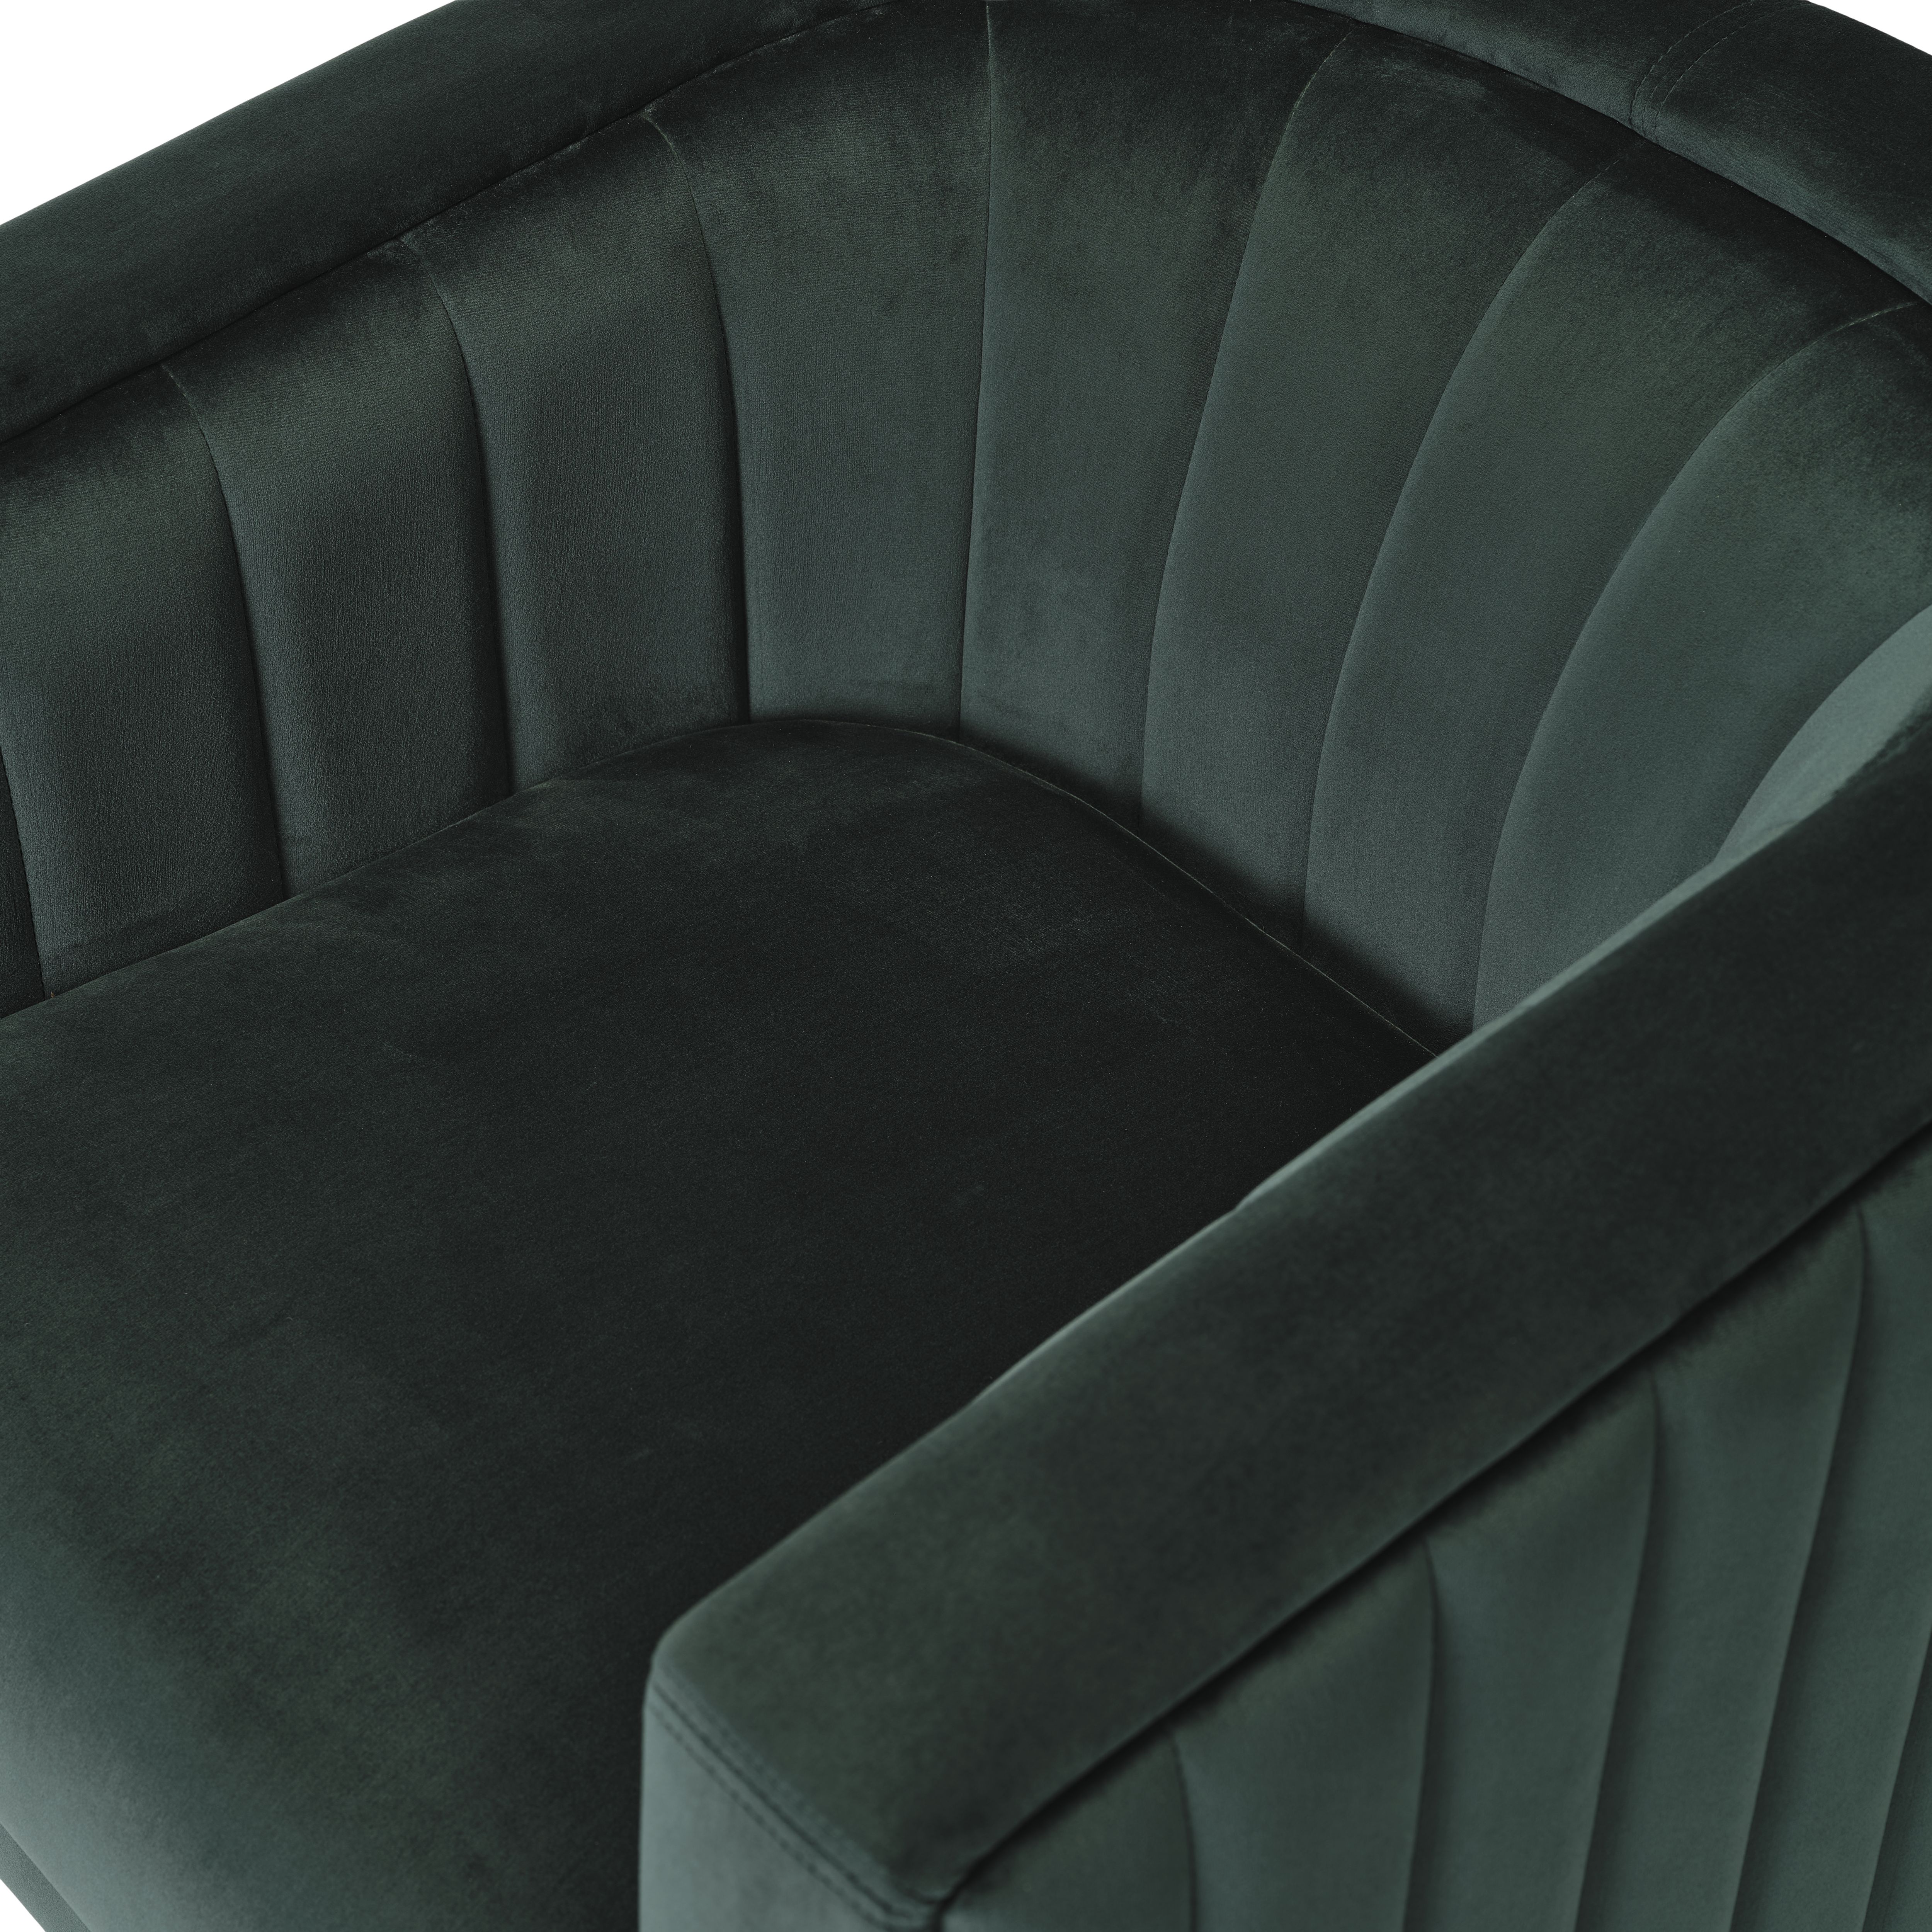 Adwen Dark green Velvet effect Relaxer chair (H)735mm (W)720mm (D)755mm